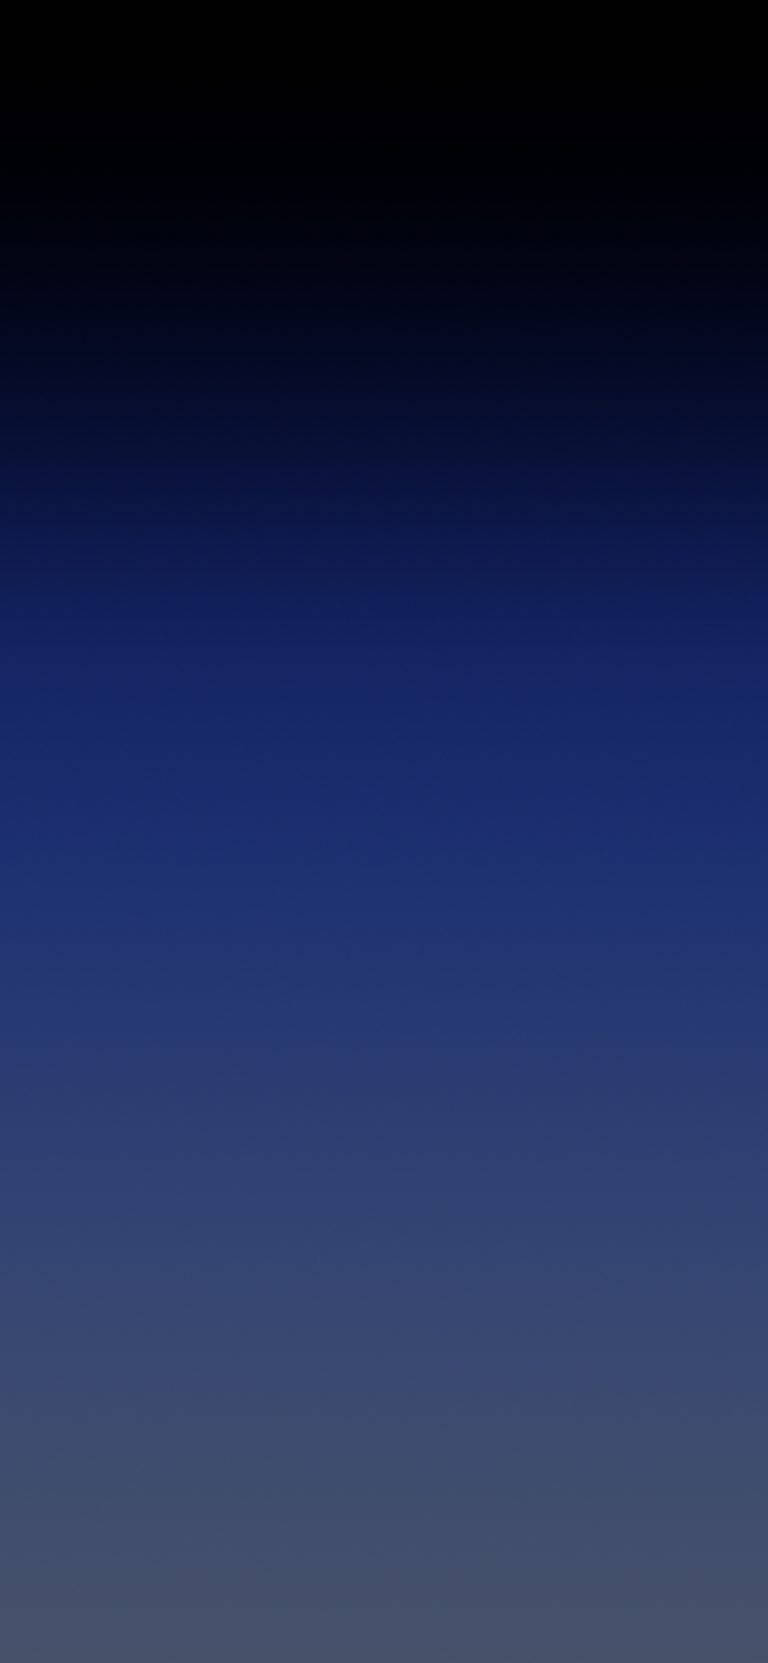 Gradientenegro Liso Azul Oscuro. Fondo de pantalla